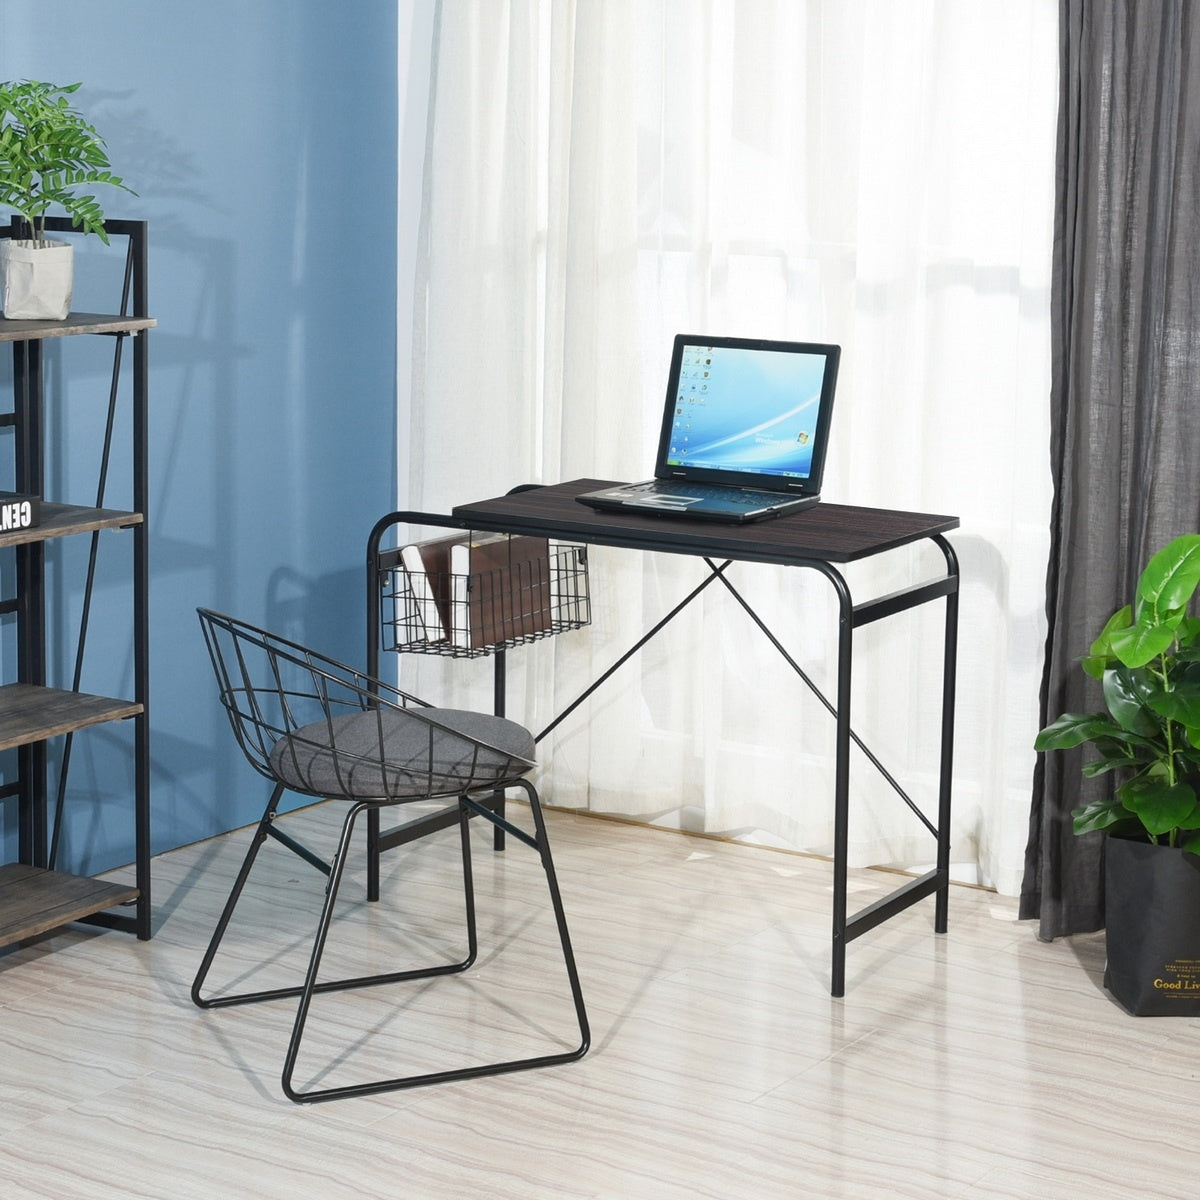 31.5" Computer Desk/ Home office desk With Wire Storage Basket - walnut & black